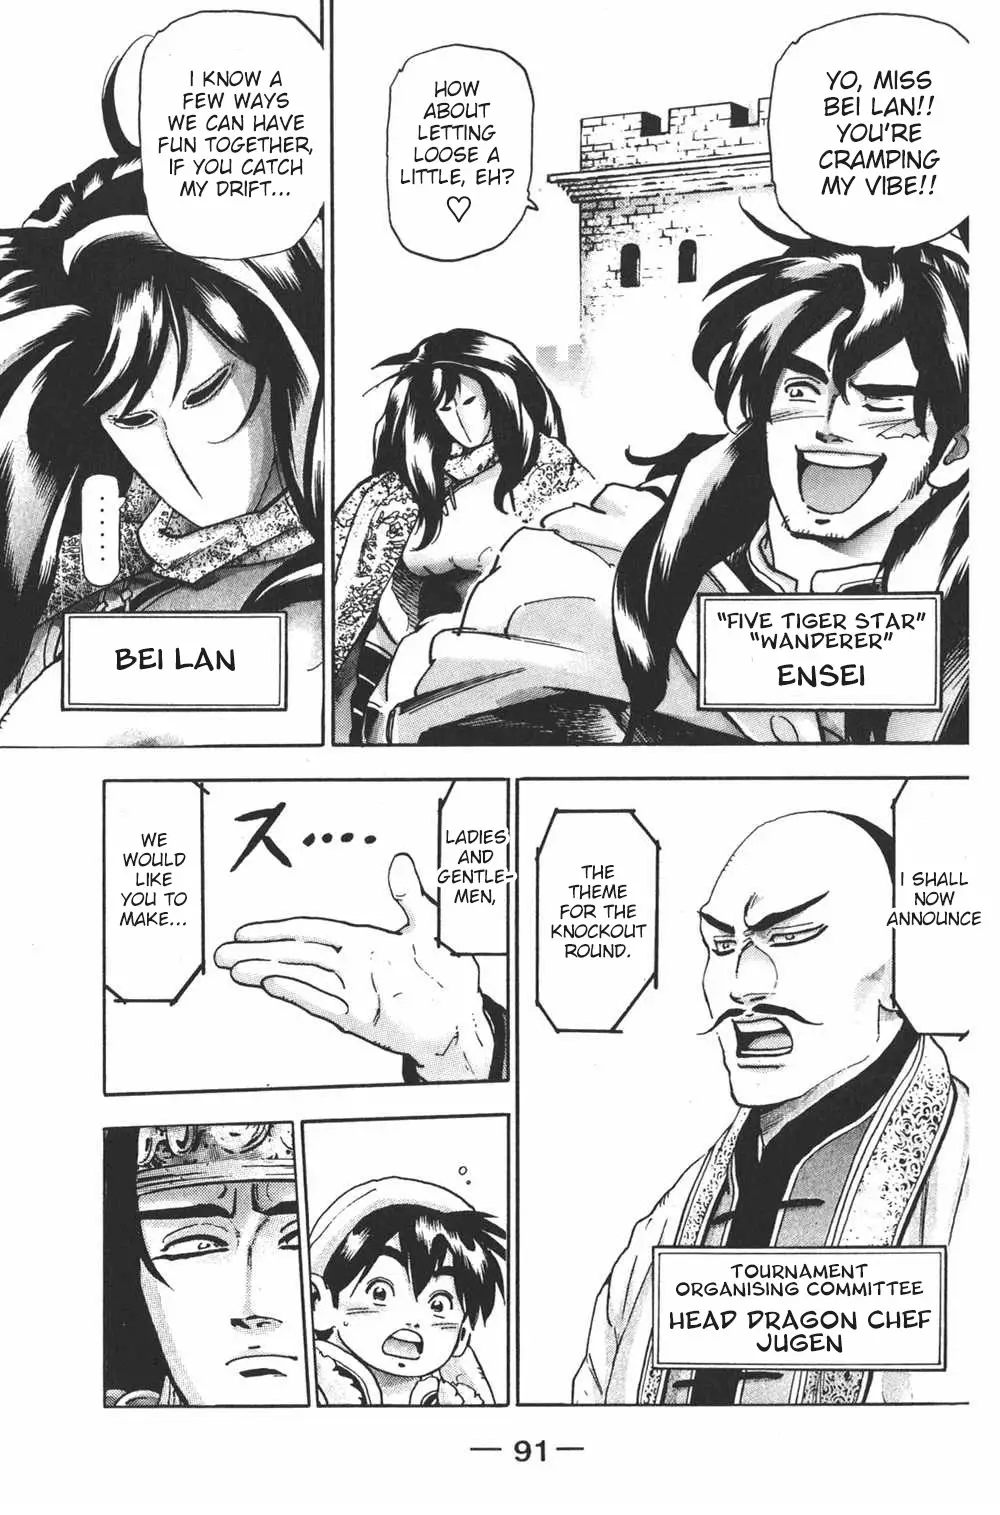 Shin Chuuka Ichiban! - 102 page 5-8a45c259